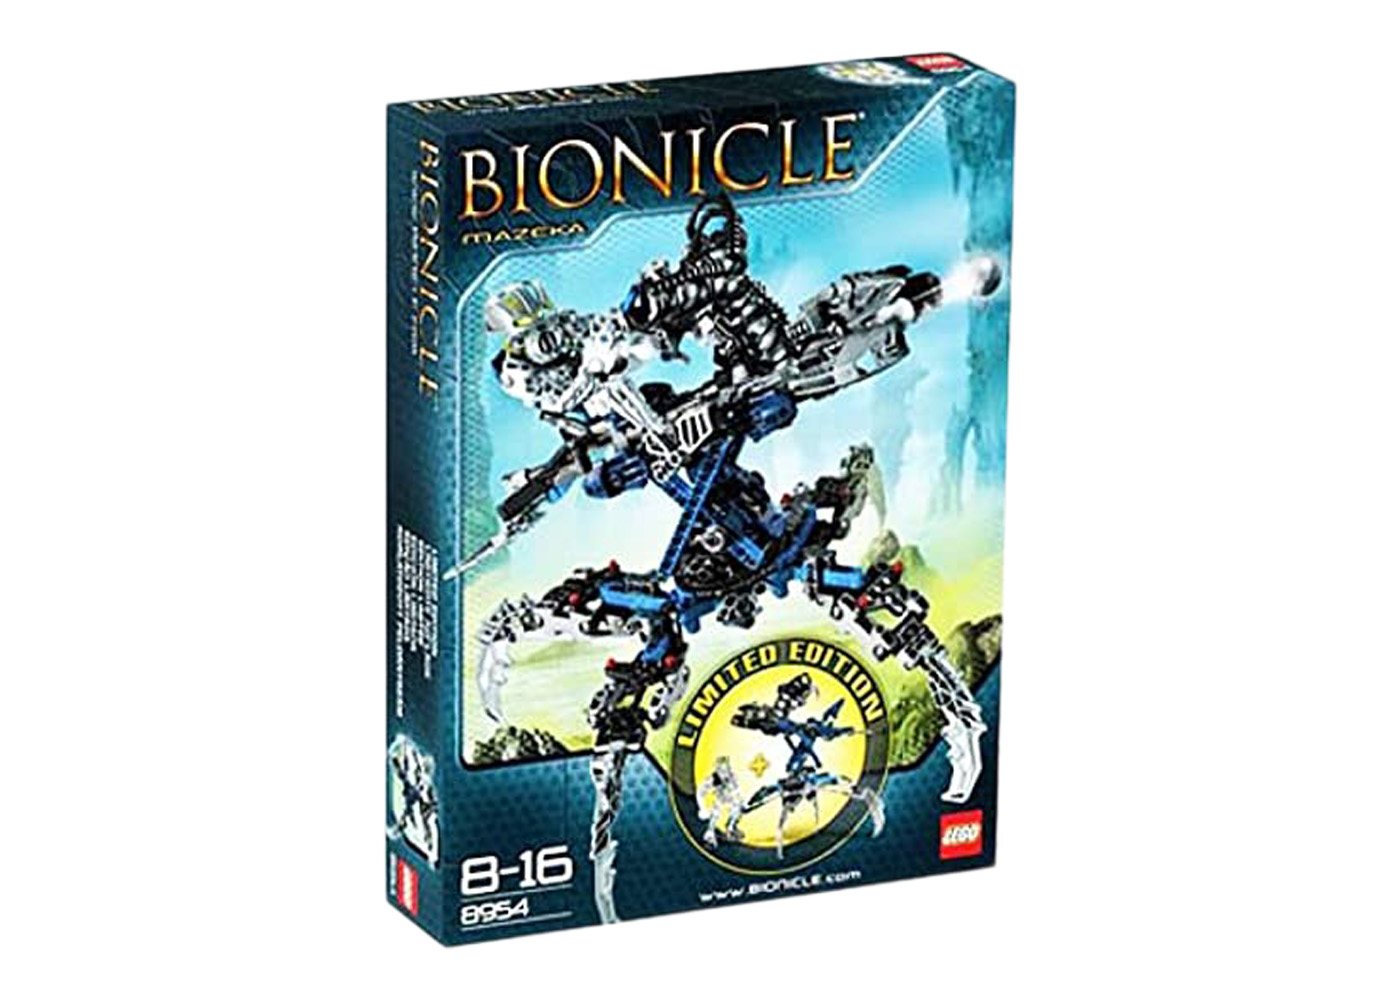 LEGO Bionicle Mazeka Set 8954 - GB